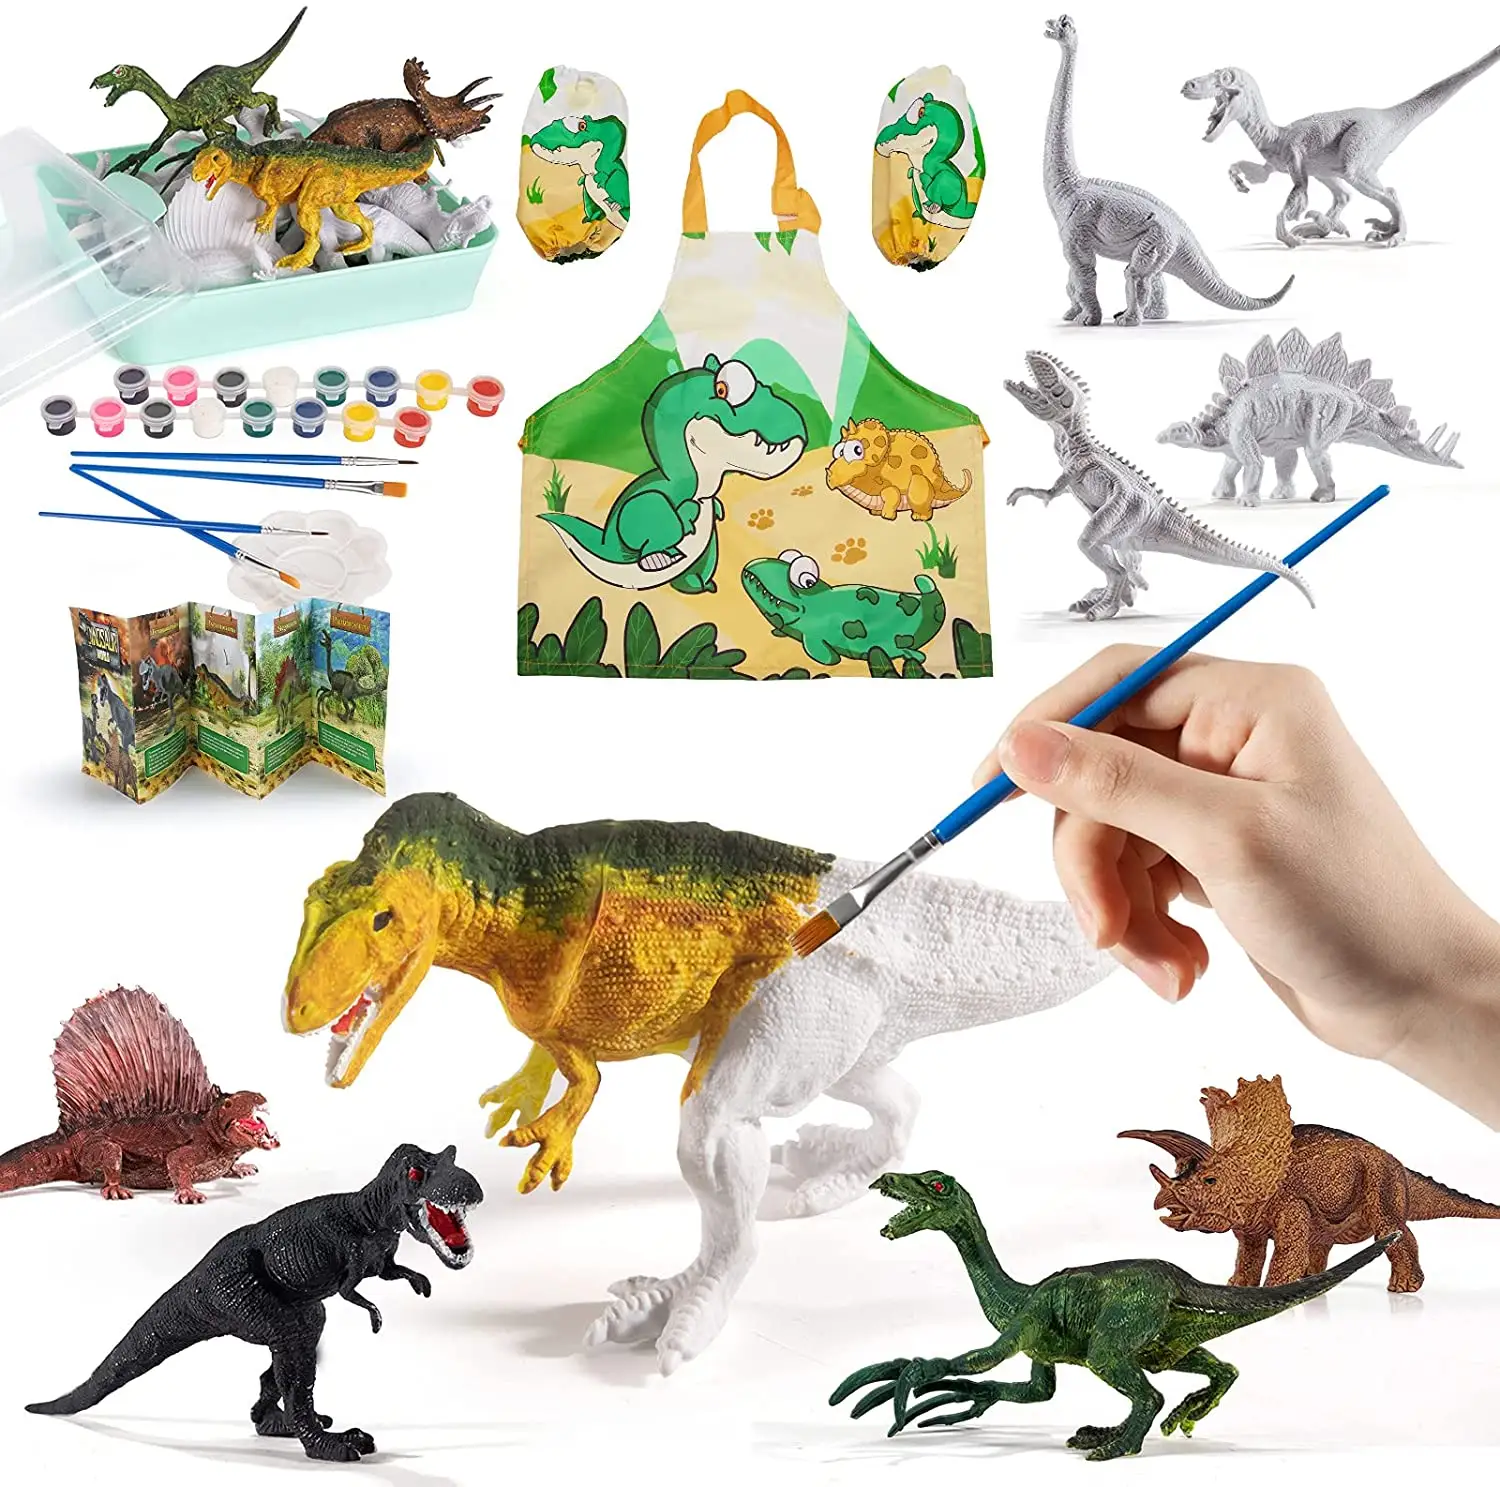 Dinozor boyama oyunu hayvan dünyası boyama oyuncak modeli bulmaca öğrenme